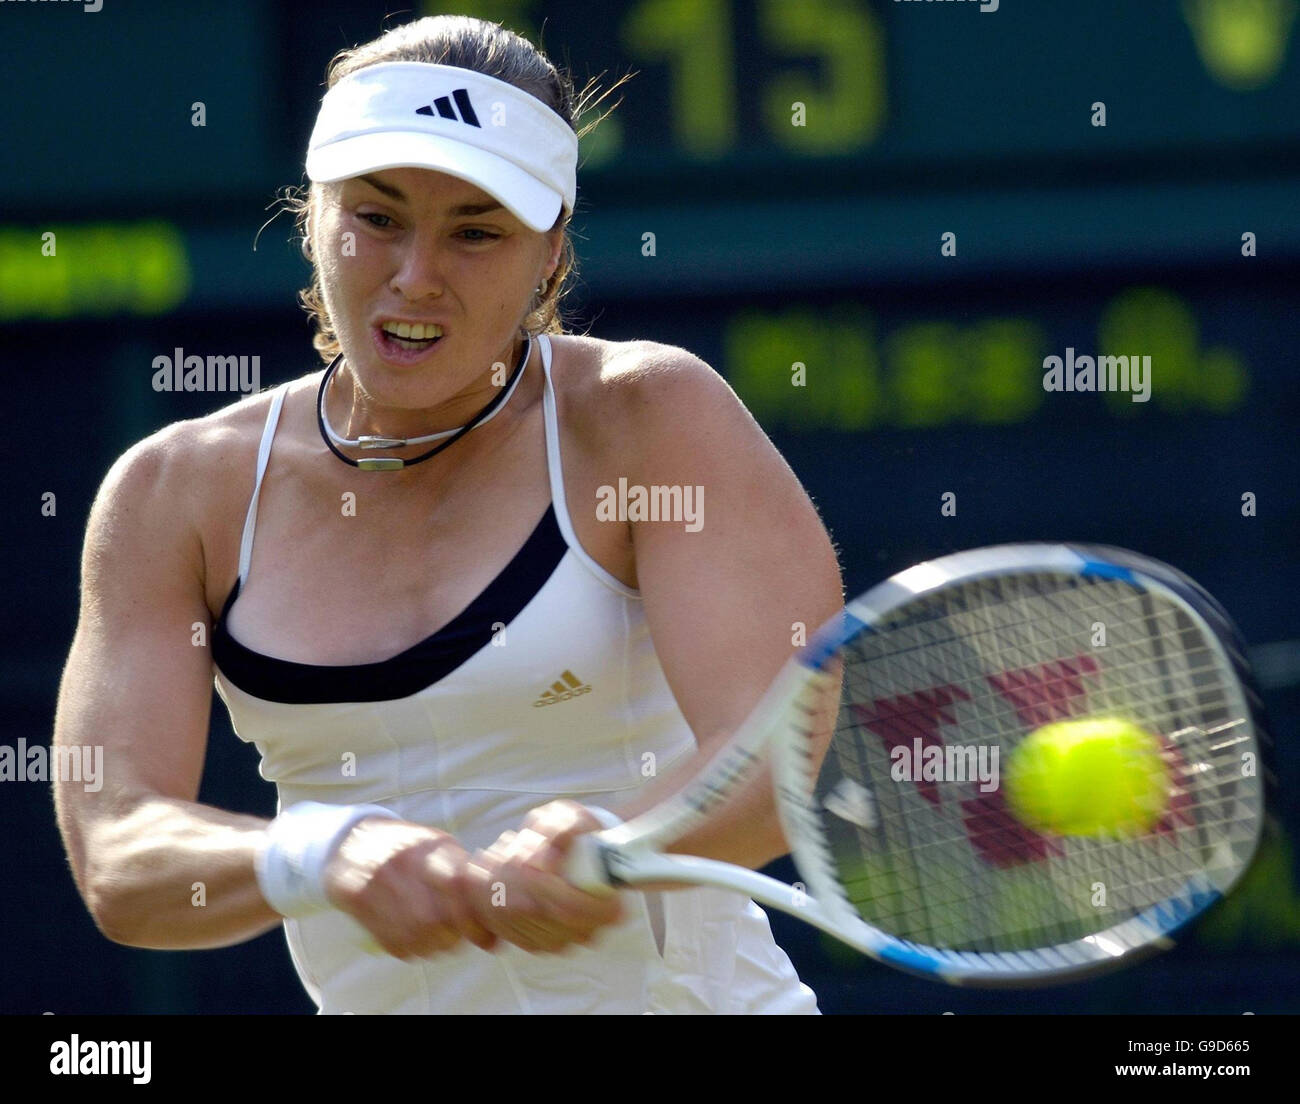 Martina Hingis della Svizzera in azione contro ai Sugiyama del Giappone durante il terzo round del campionato di tennis al prato dell'Inghilterra a Wimbledon. Foto Stock